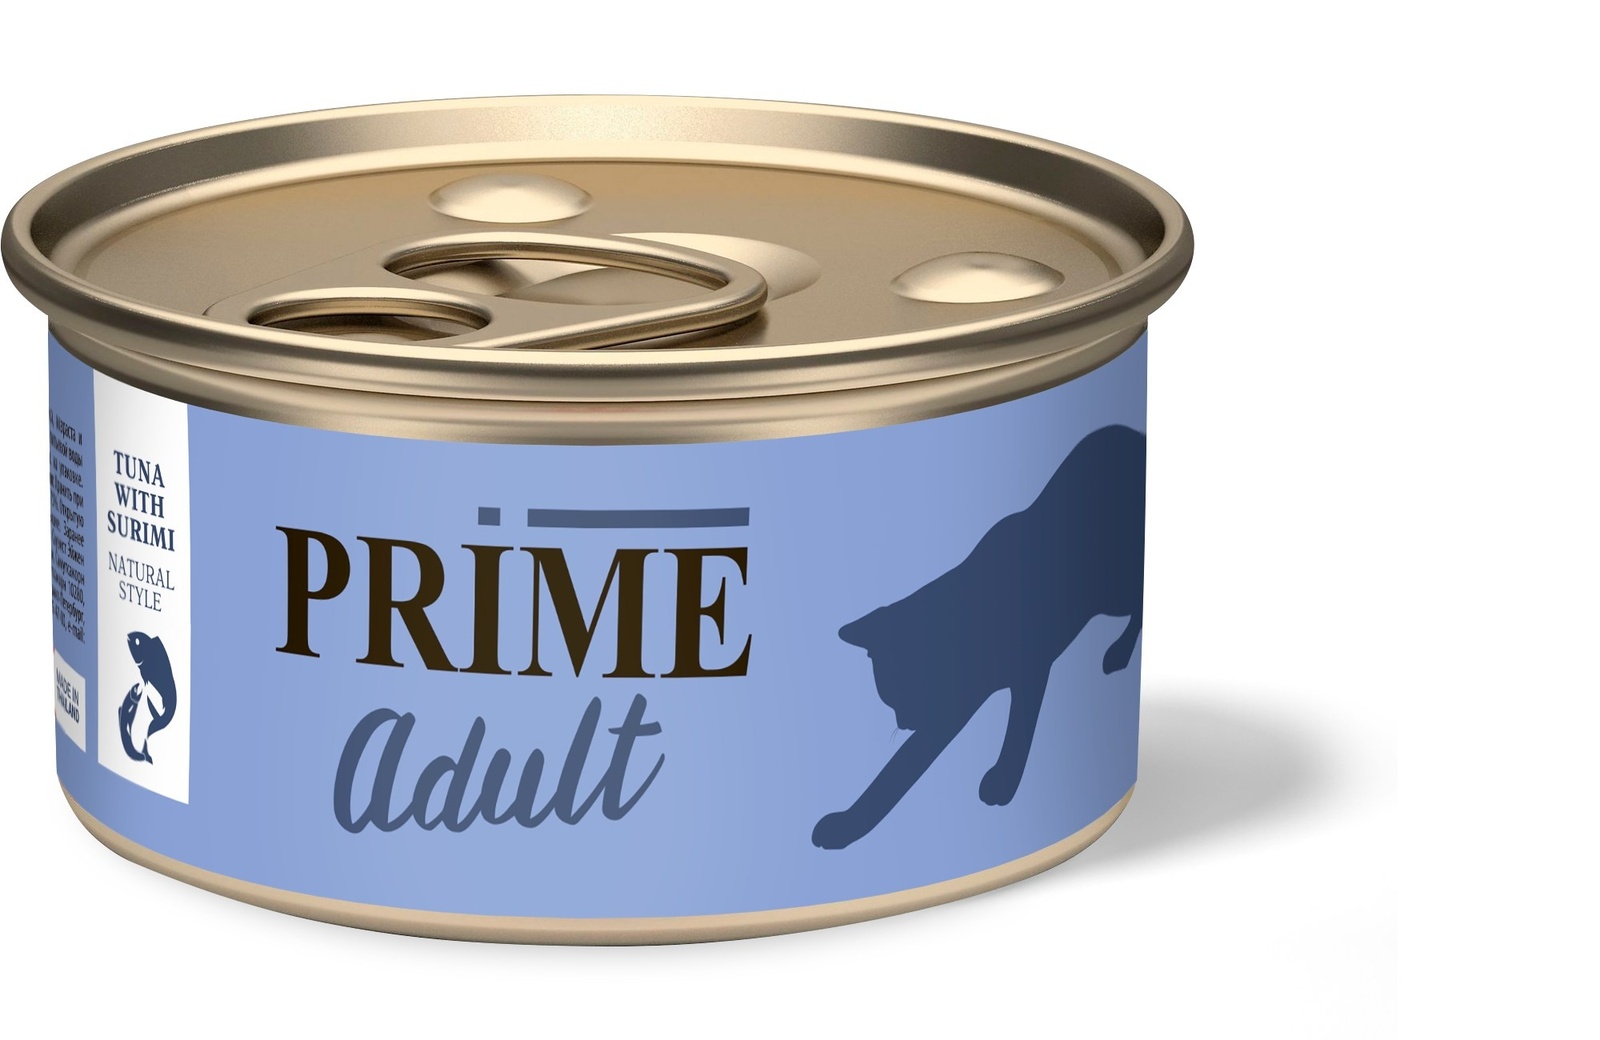 Prime Prime консервы для кошек тунец с сурими в собственном соку (70 г) prime prime консервы для кошек тунец в собственном соку 70 г